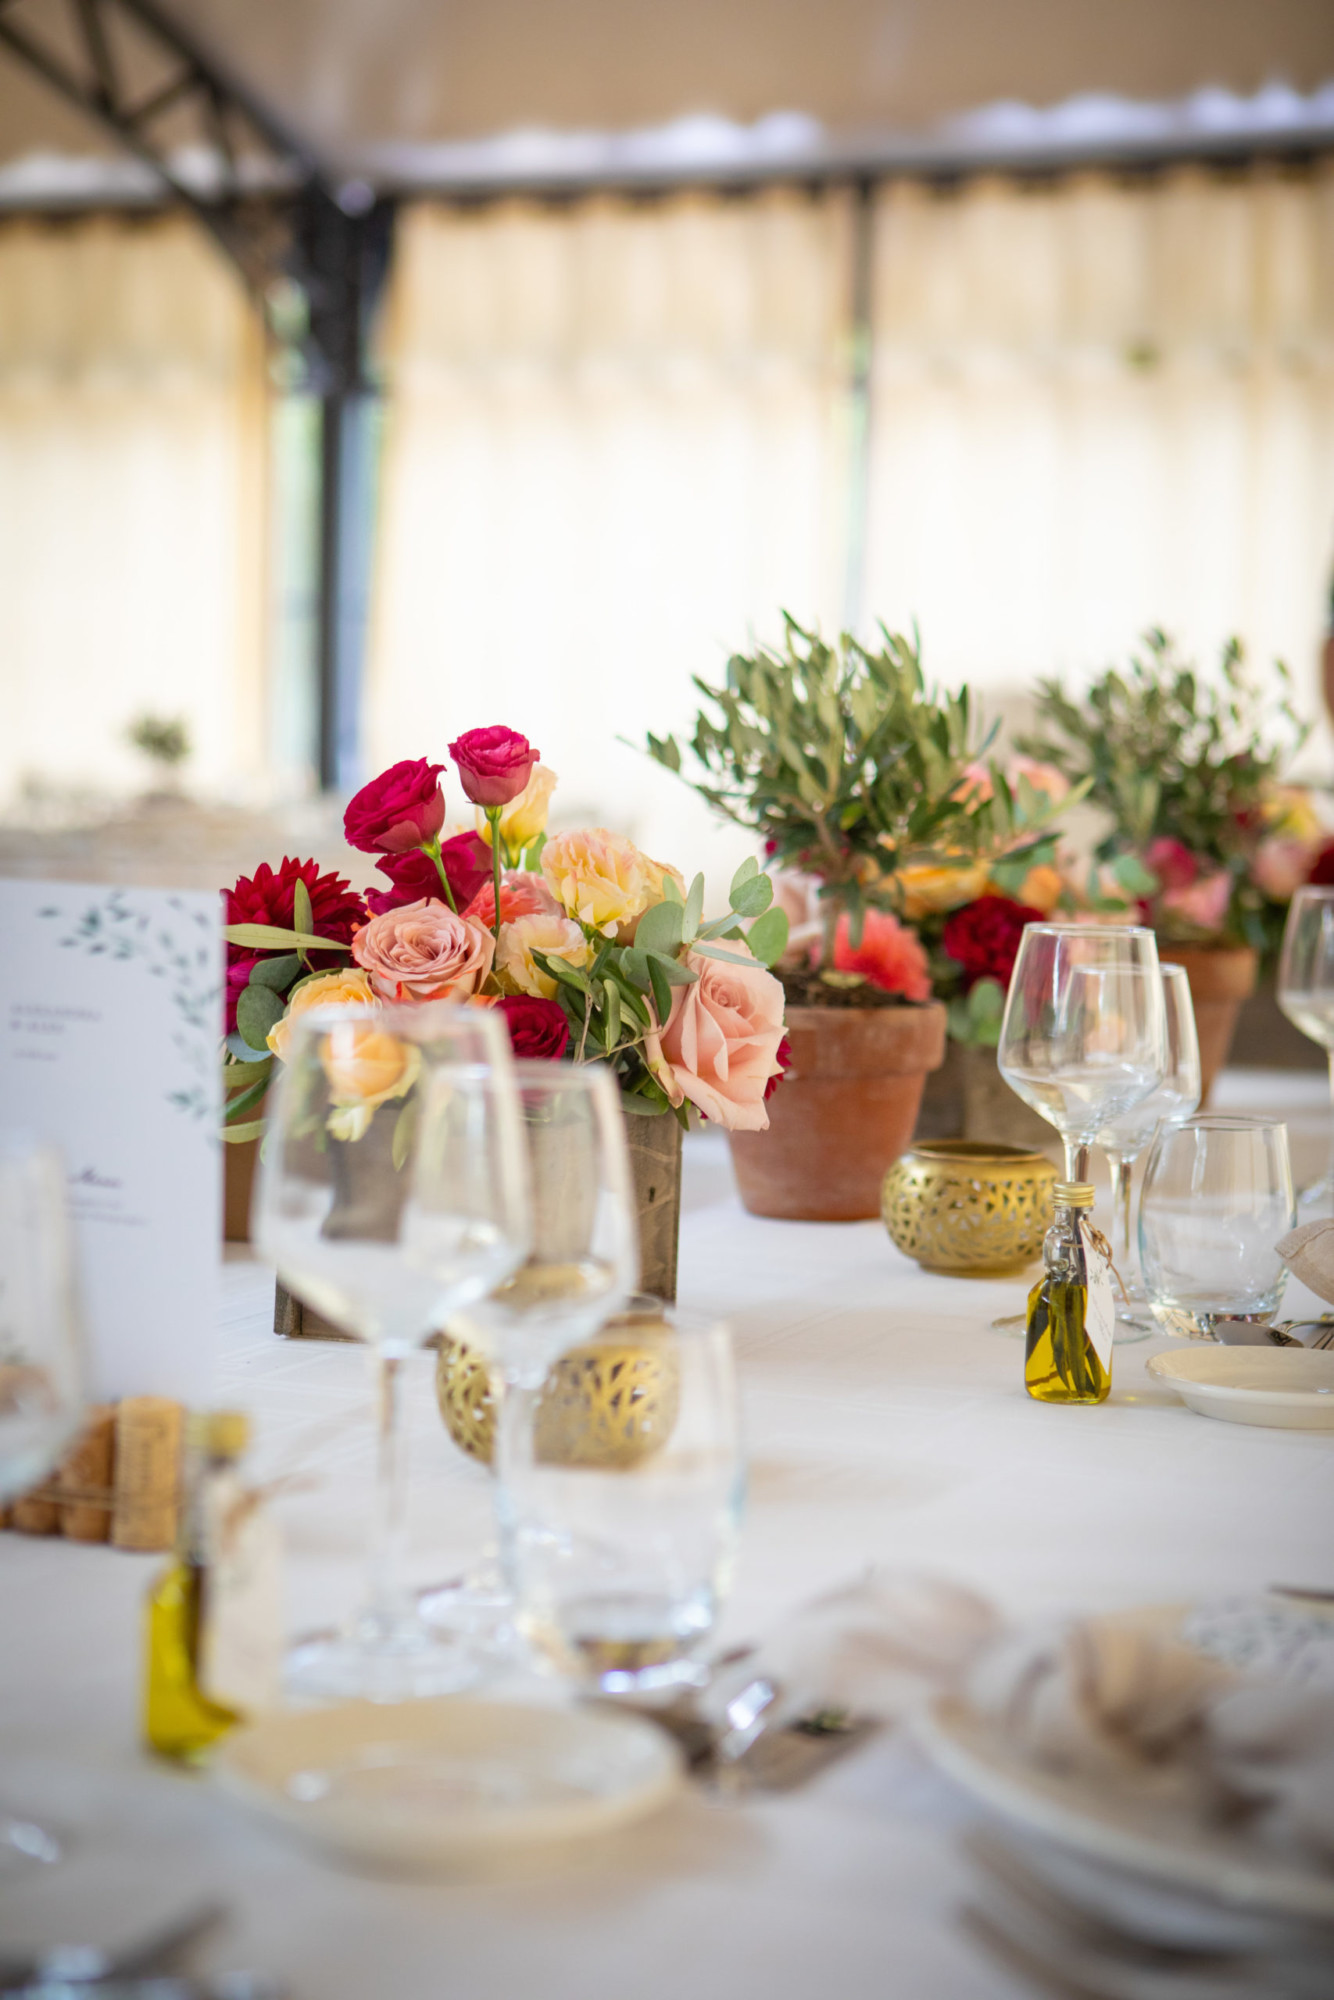 décoration ile de france - table d'honneur, wedding designer, floral designer, fleuriste seine et marne